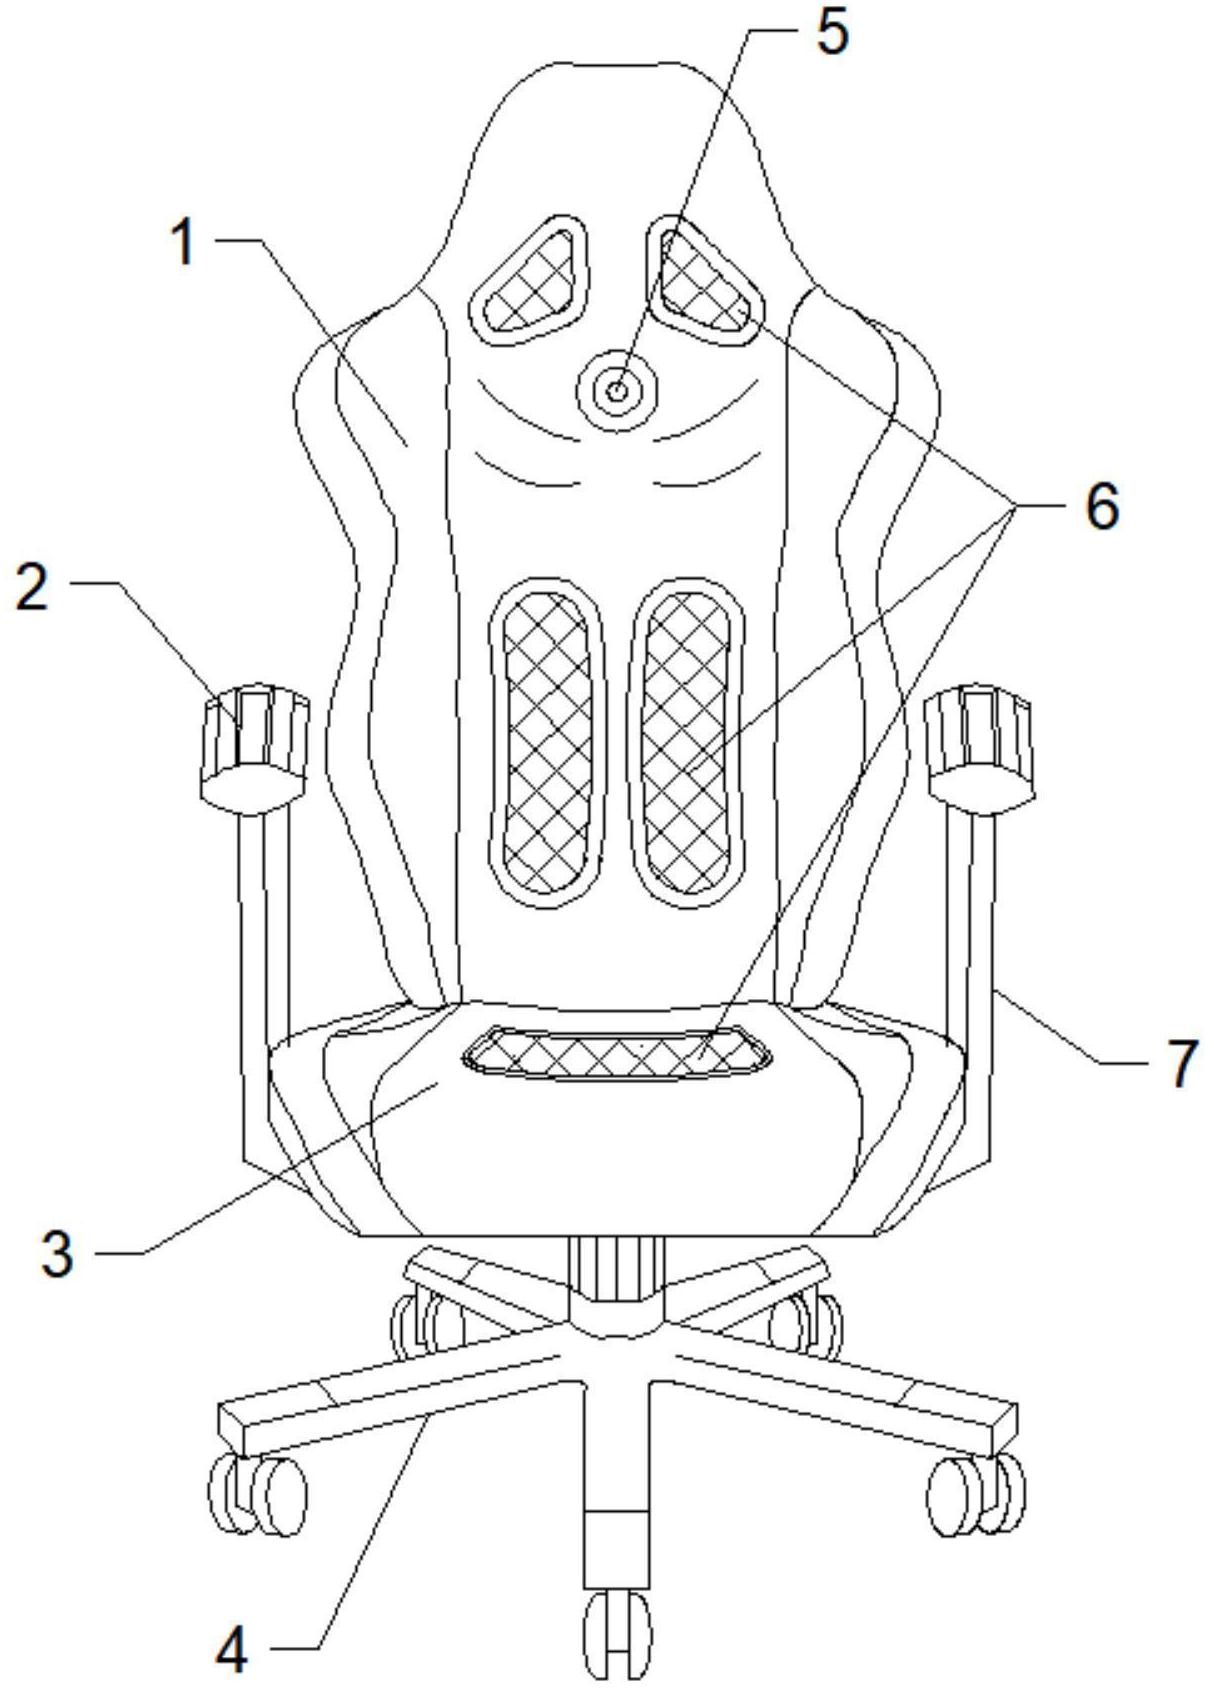 电竞椅画法图片